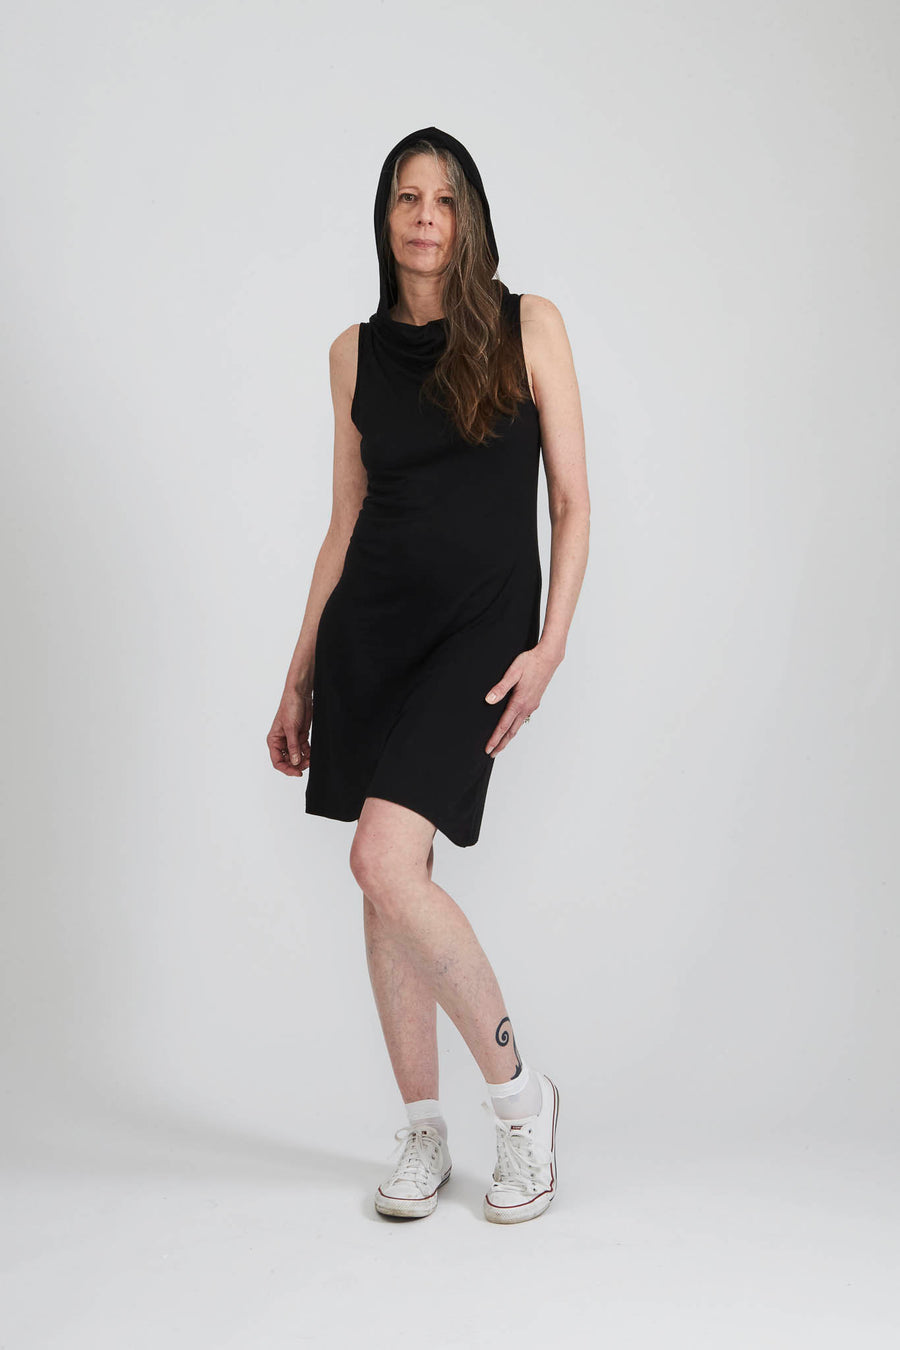 BATSHEVA - Norma Dress in Black Jersey